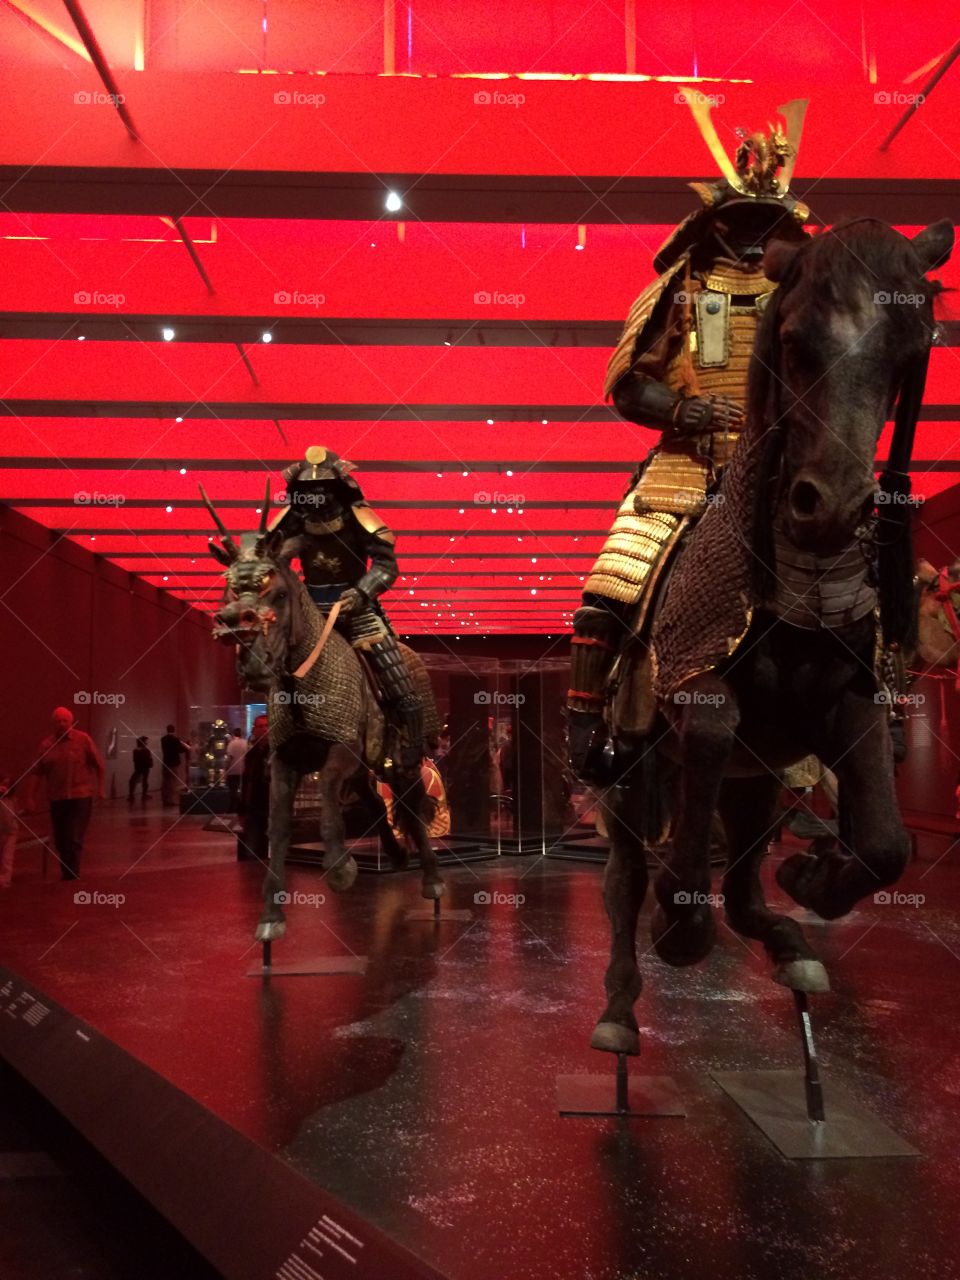 Samurai exhibit 